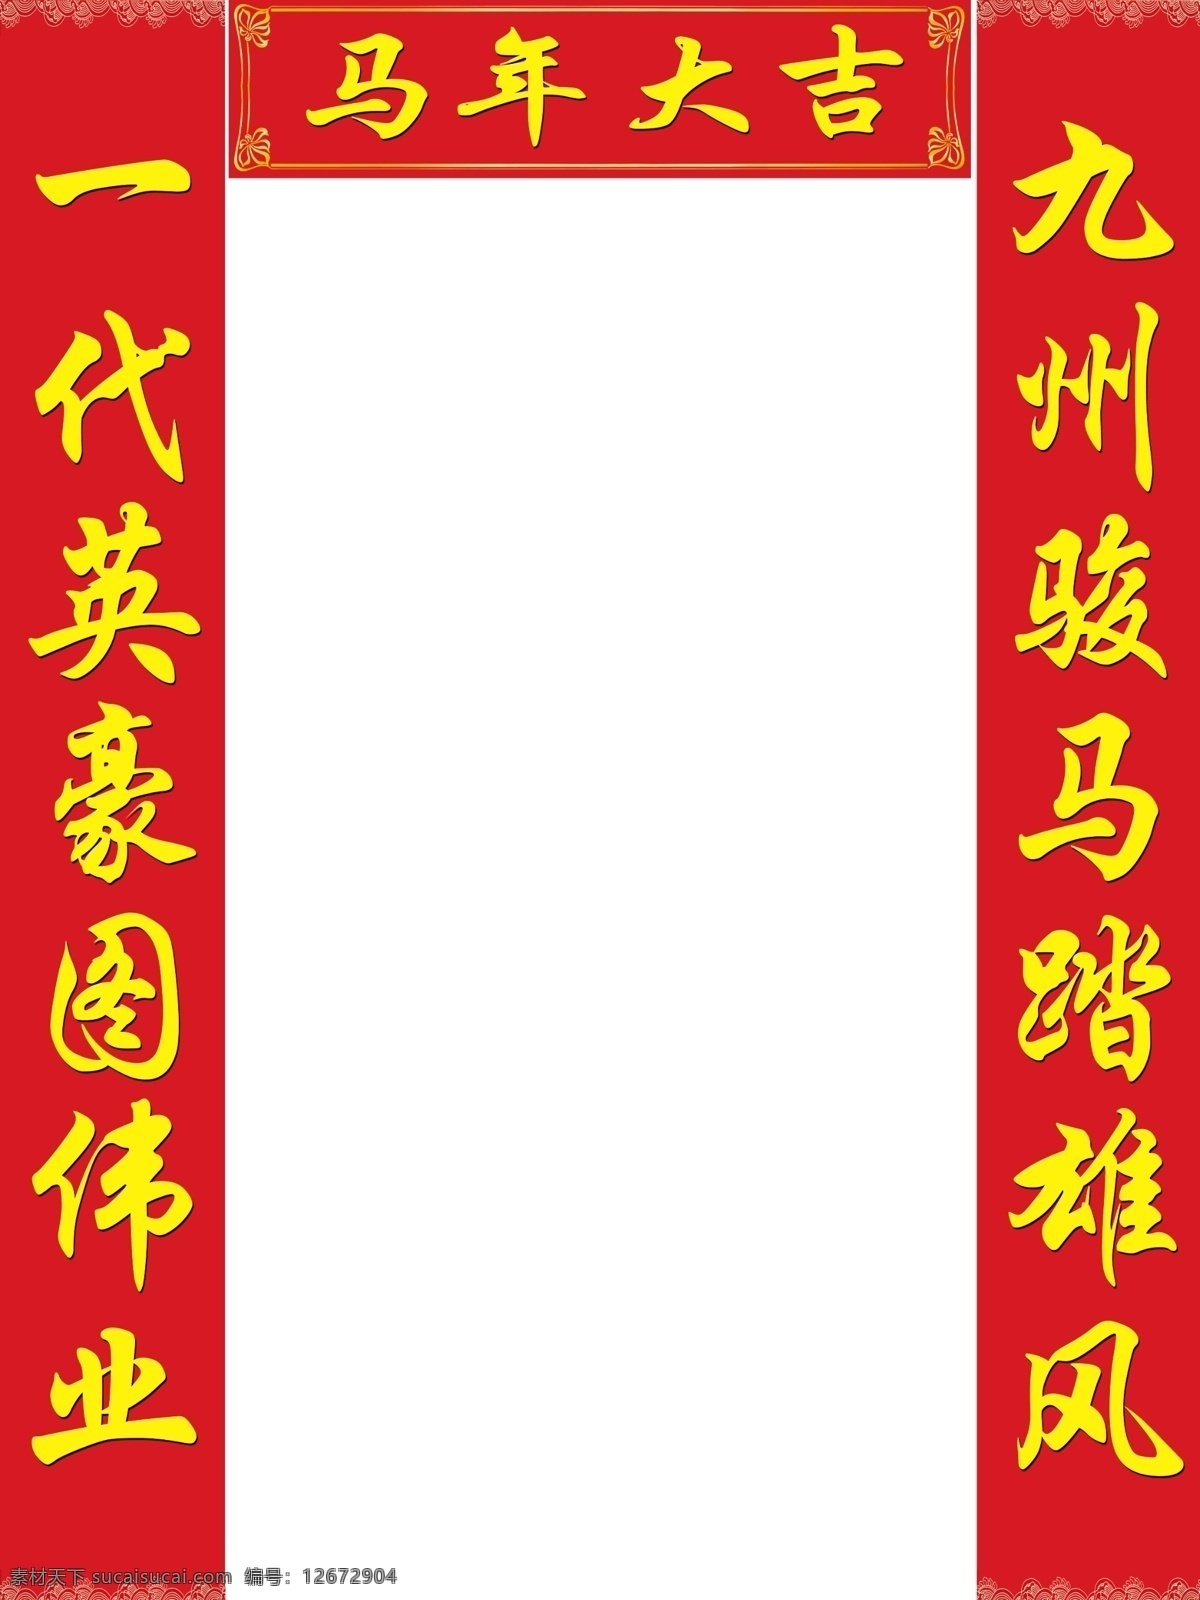 马年对联 对联 红色背景 新年素材 马年大吉 马 春节 节日素材 源文件